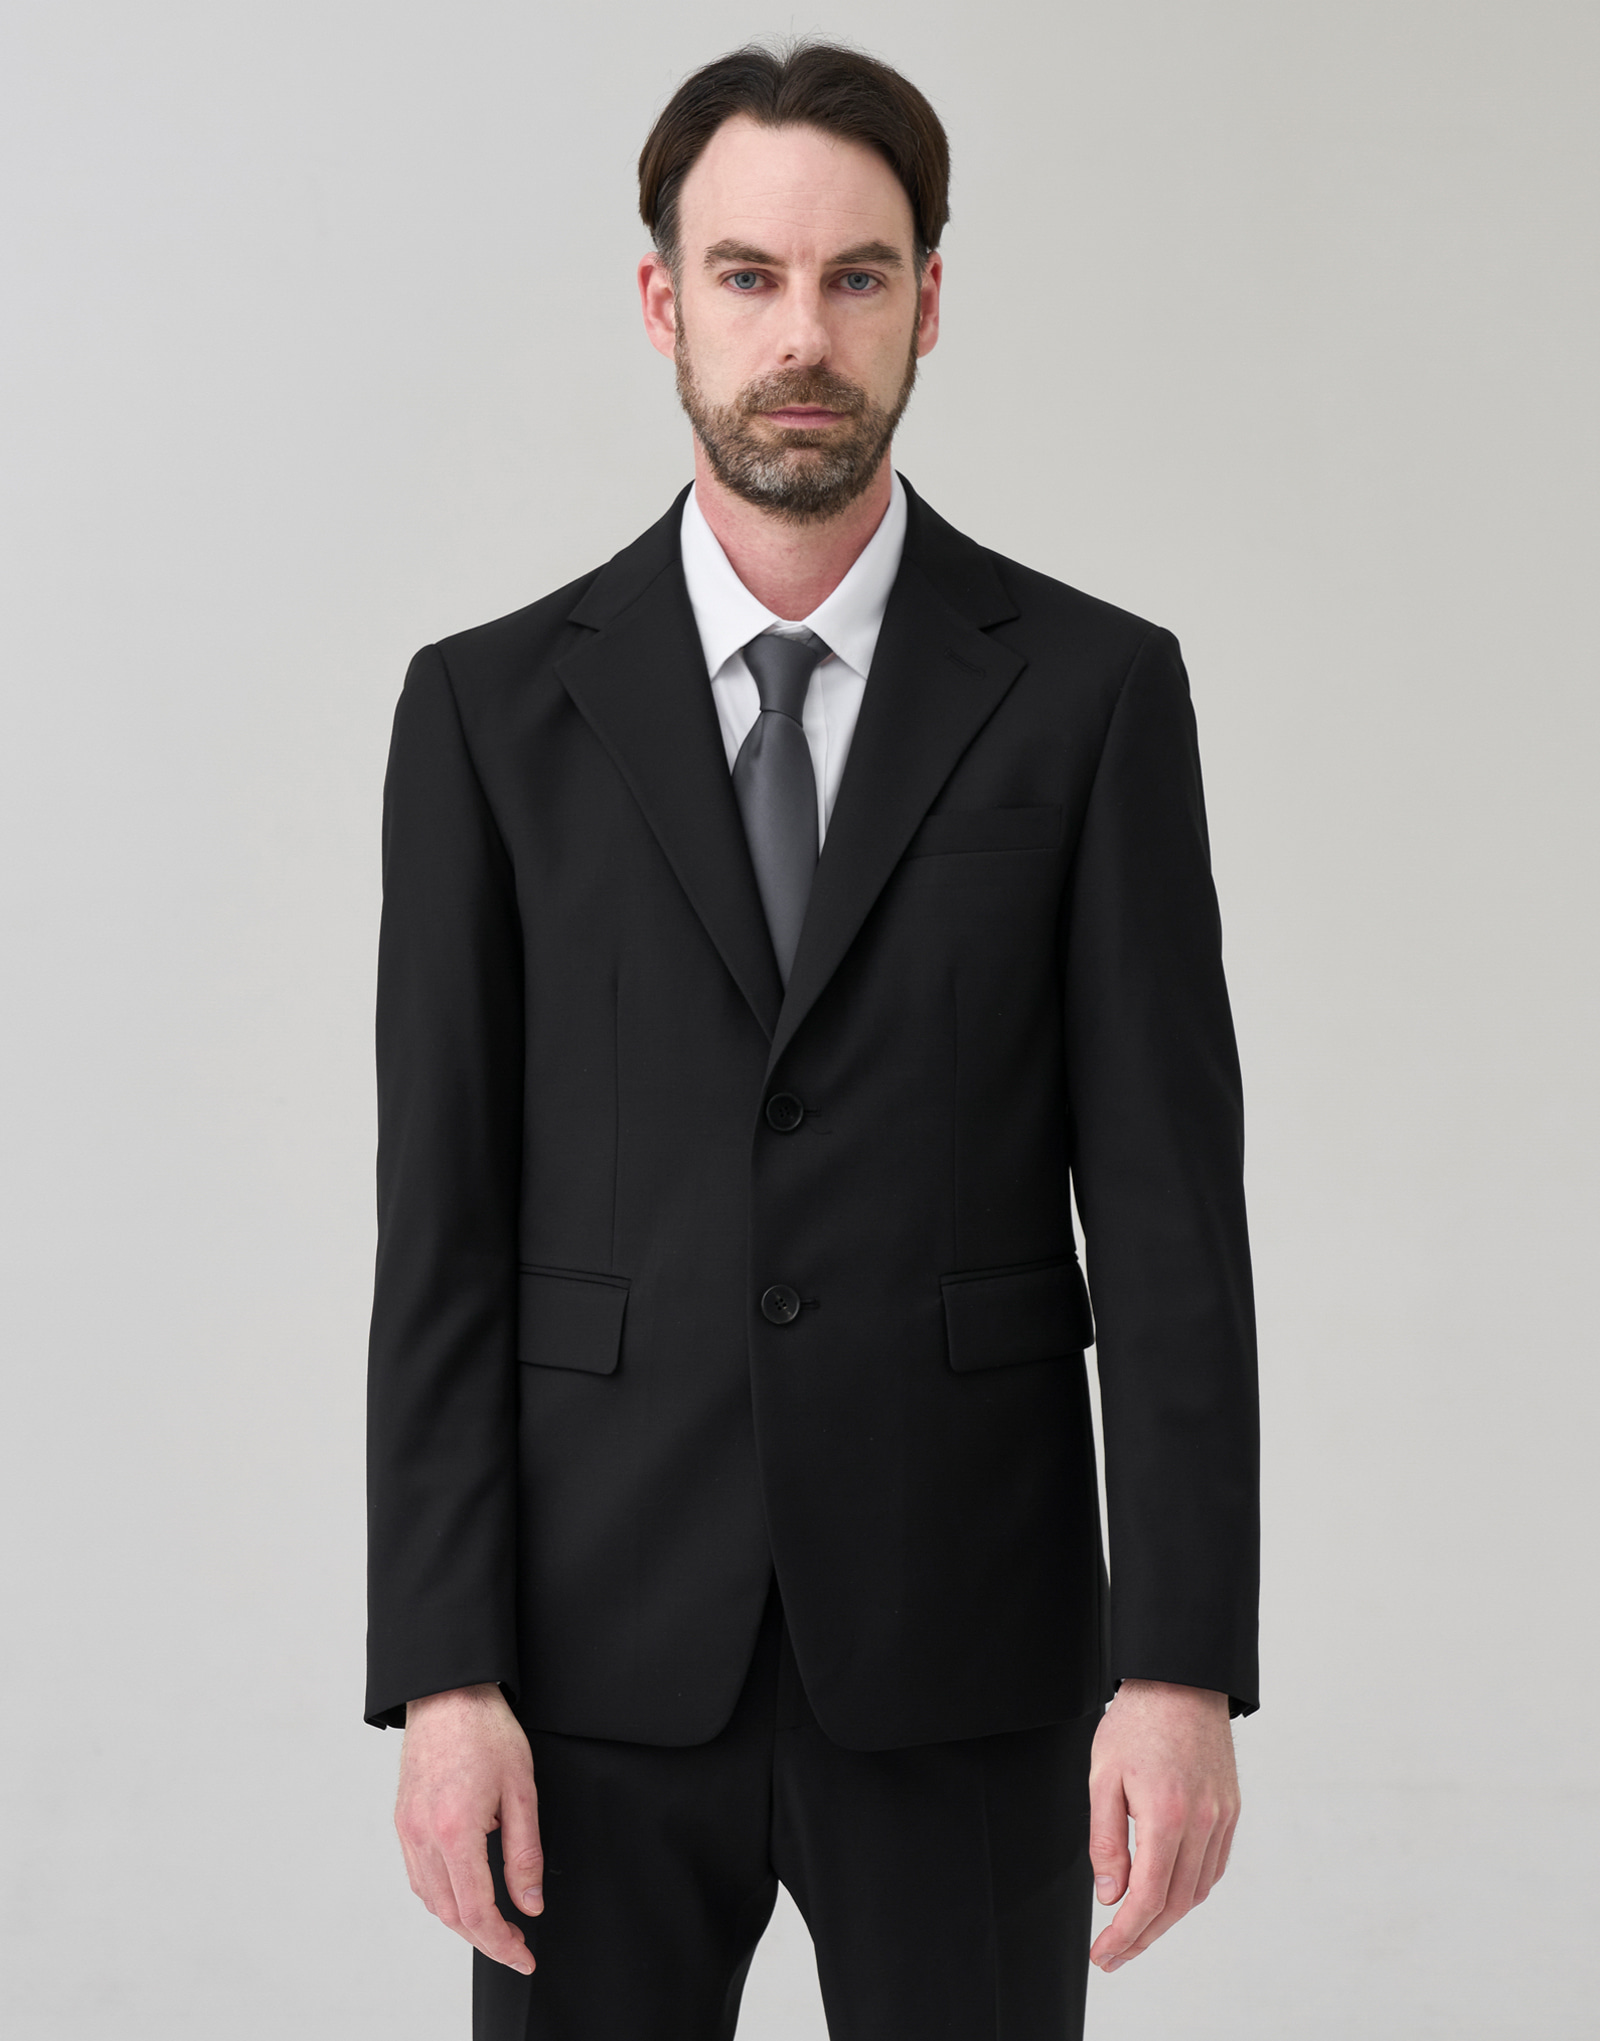 Tailored suit single jacket #AD2028 Black